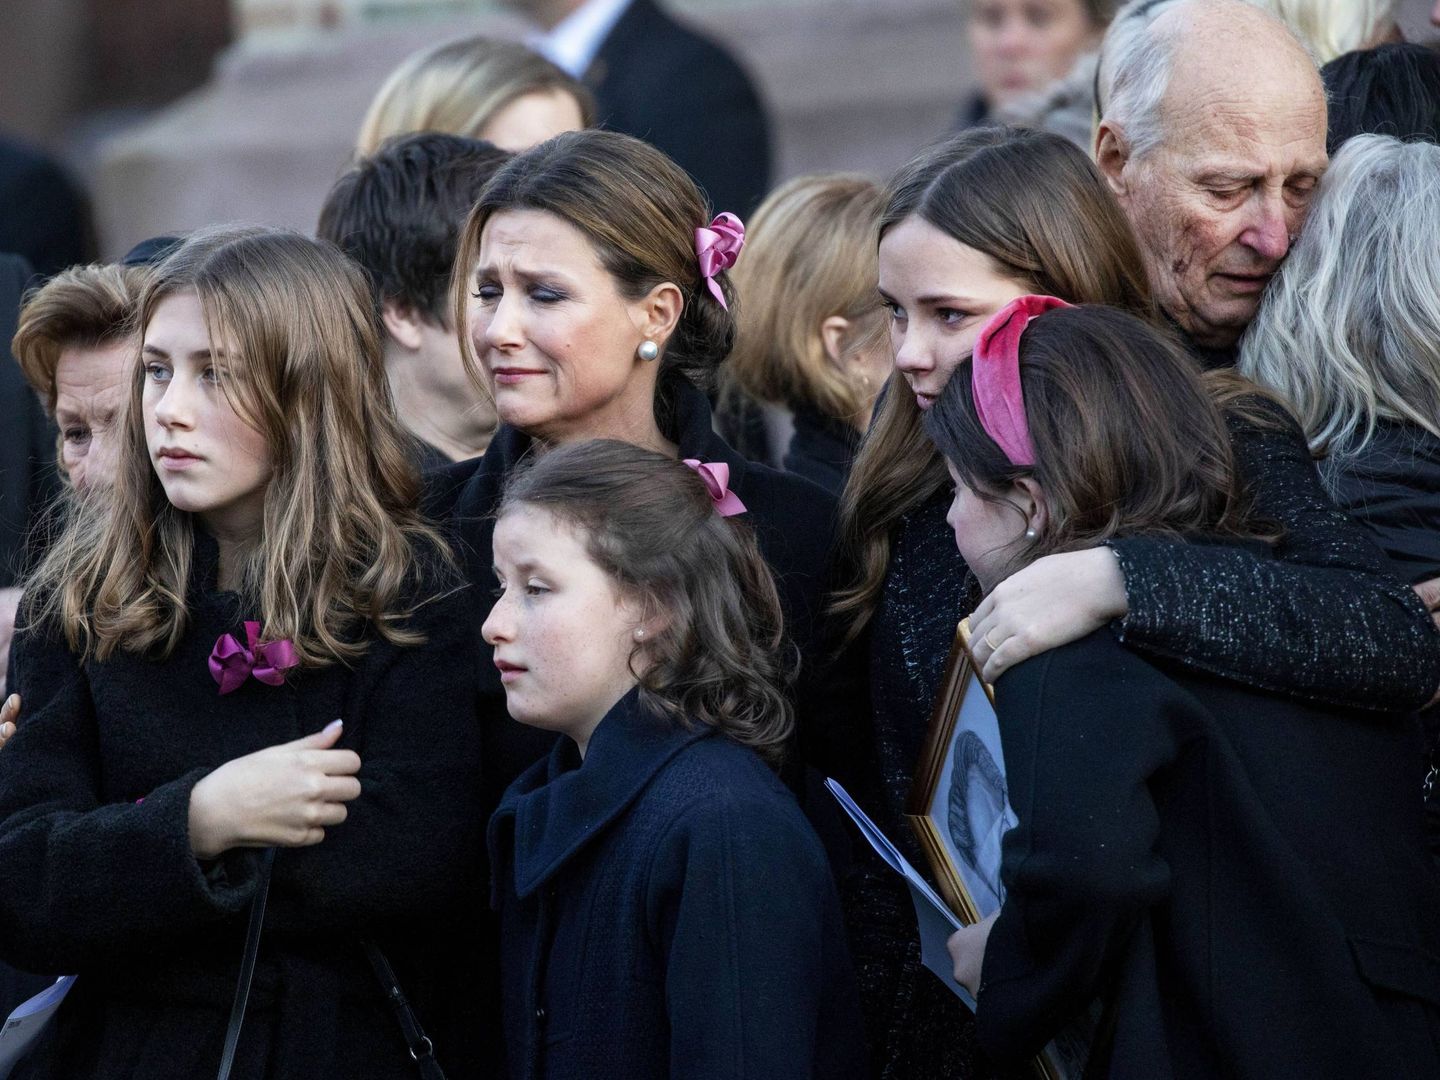 Marta Luisa y sus hijas, en el funeral de Ari Behn. En segundo plano, el rey Harald consuela a Marianne Solberg Behn. (Cordon Press)